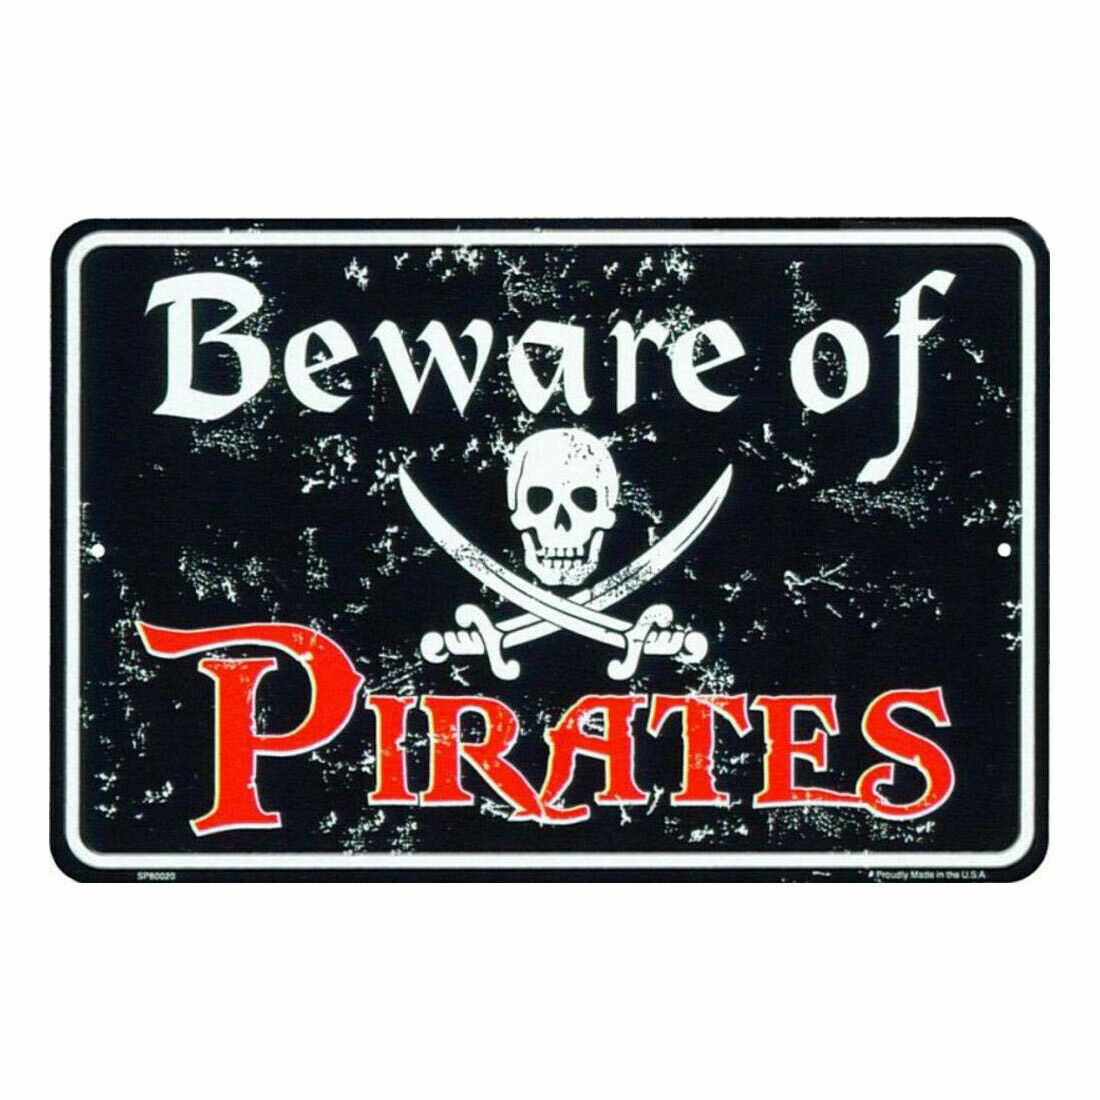 Beware of Pirates Metal Sign 8x12